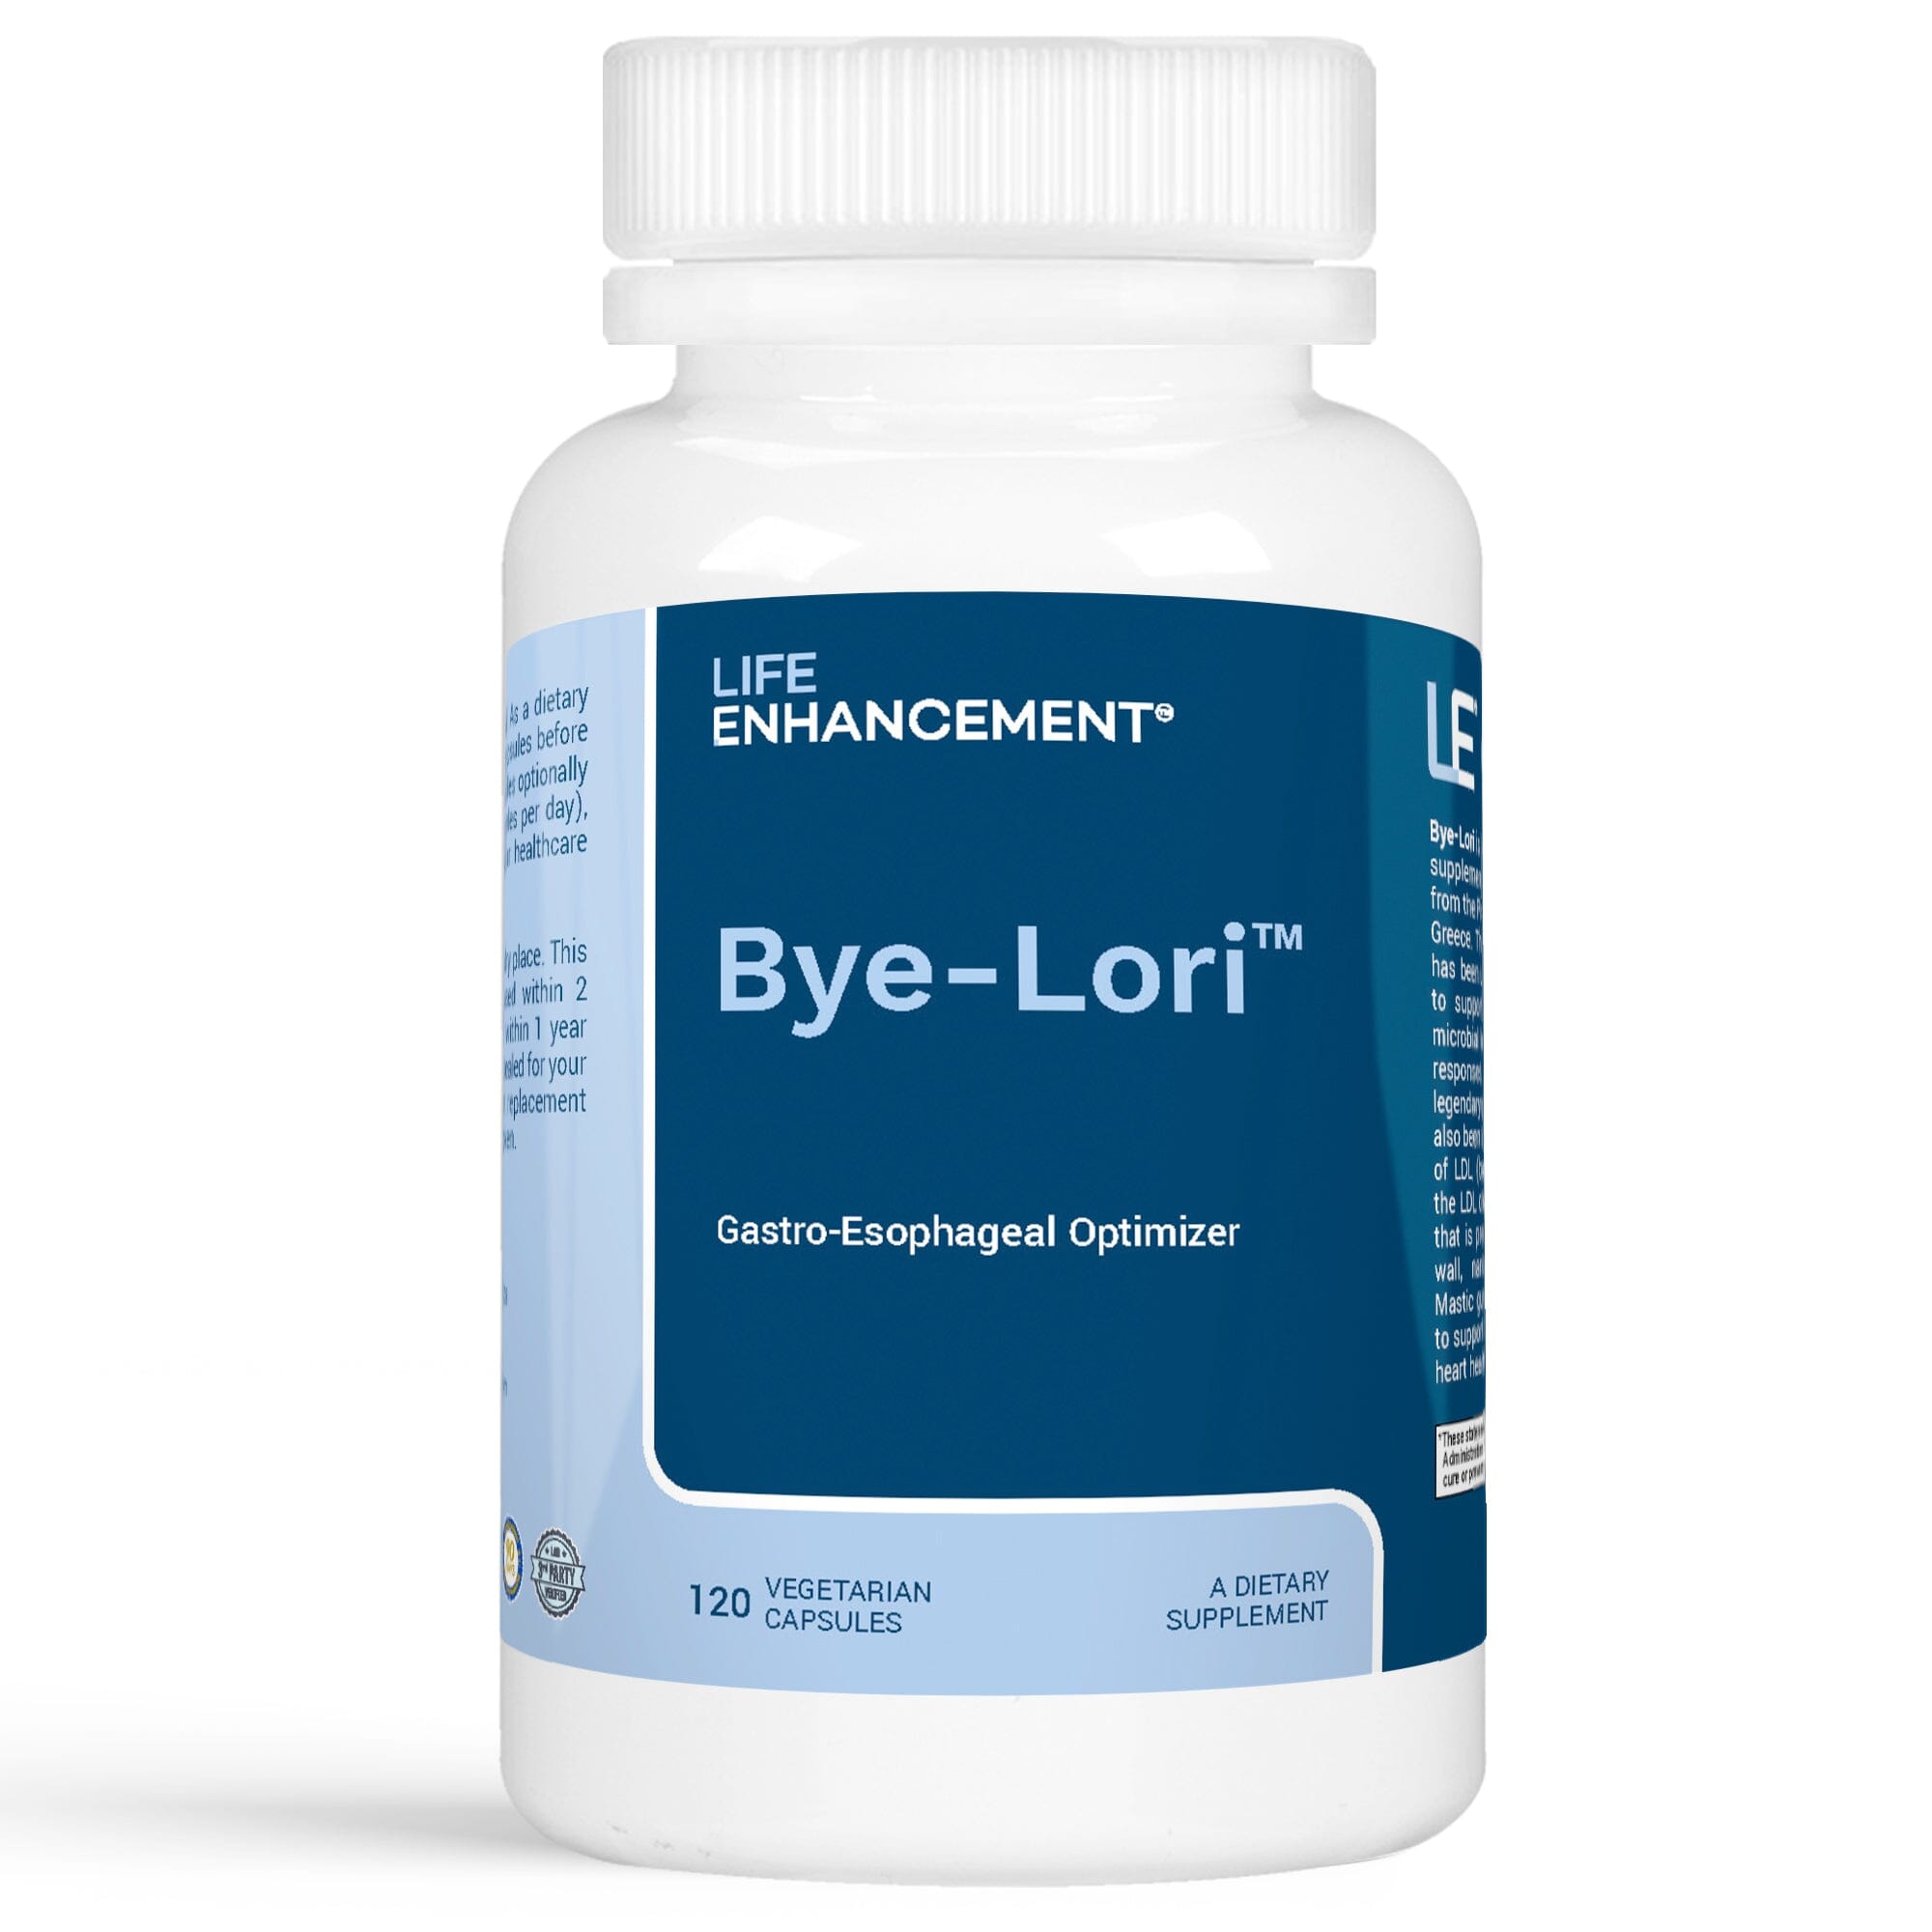 Bye-Lori™